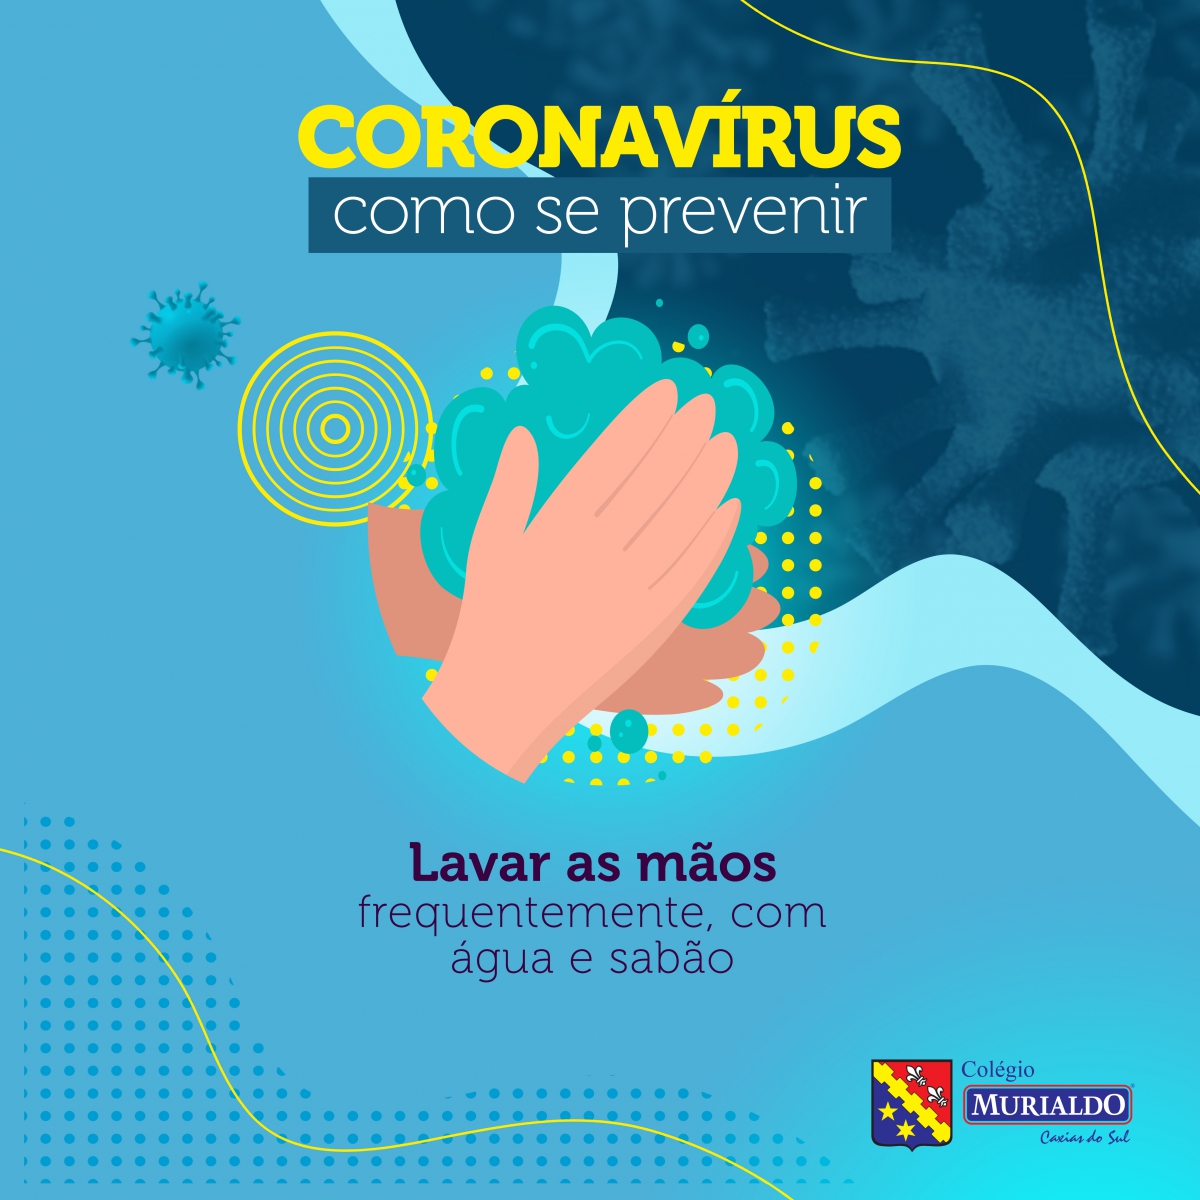 Gabriel contra o Coronavírus: livro infantil